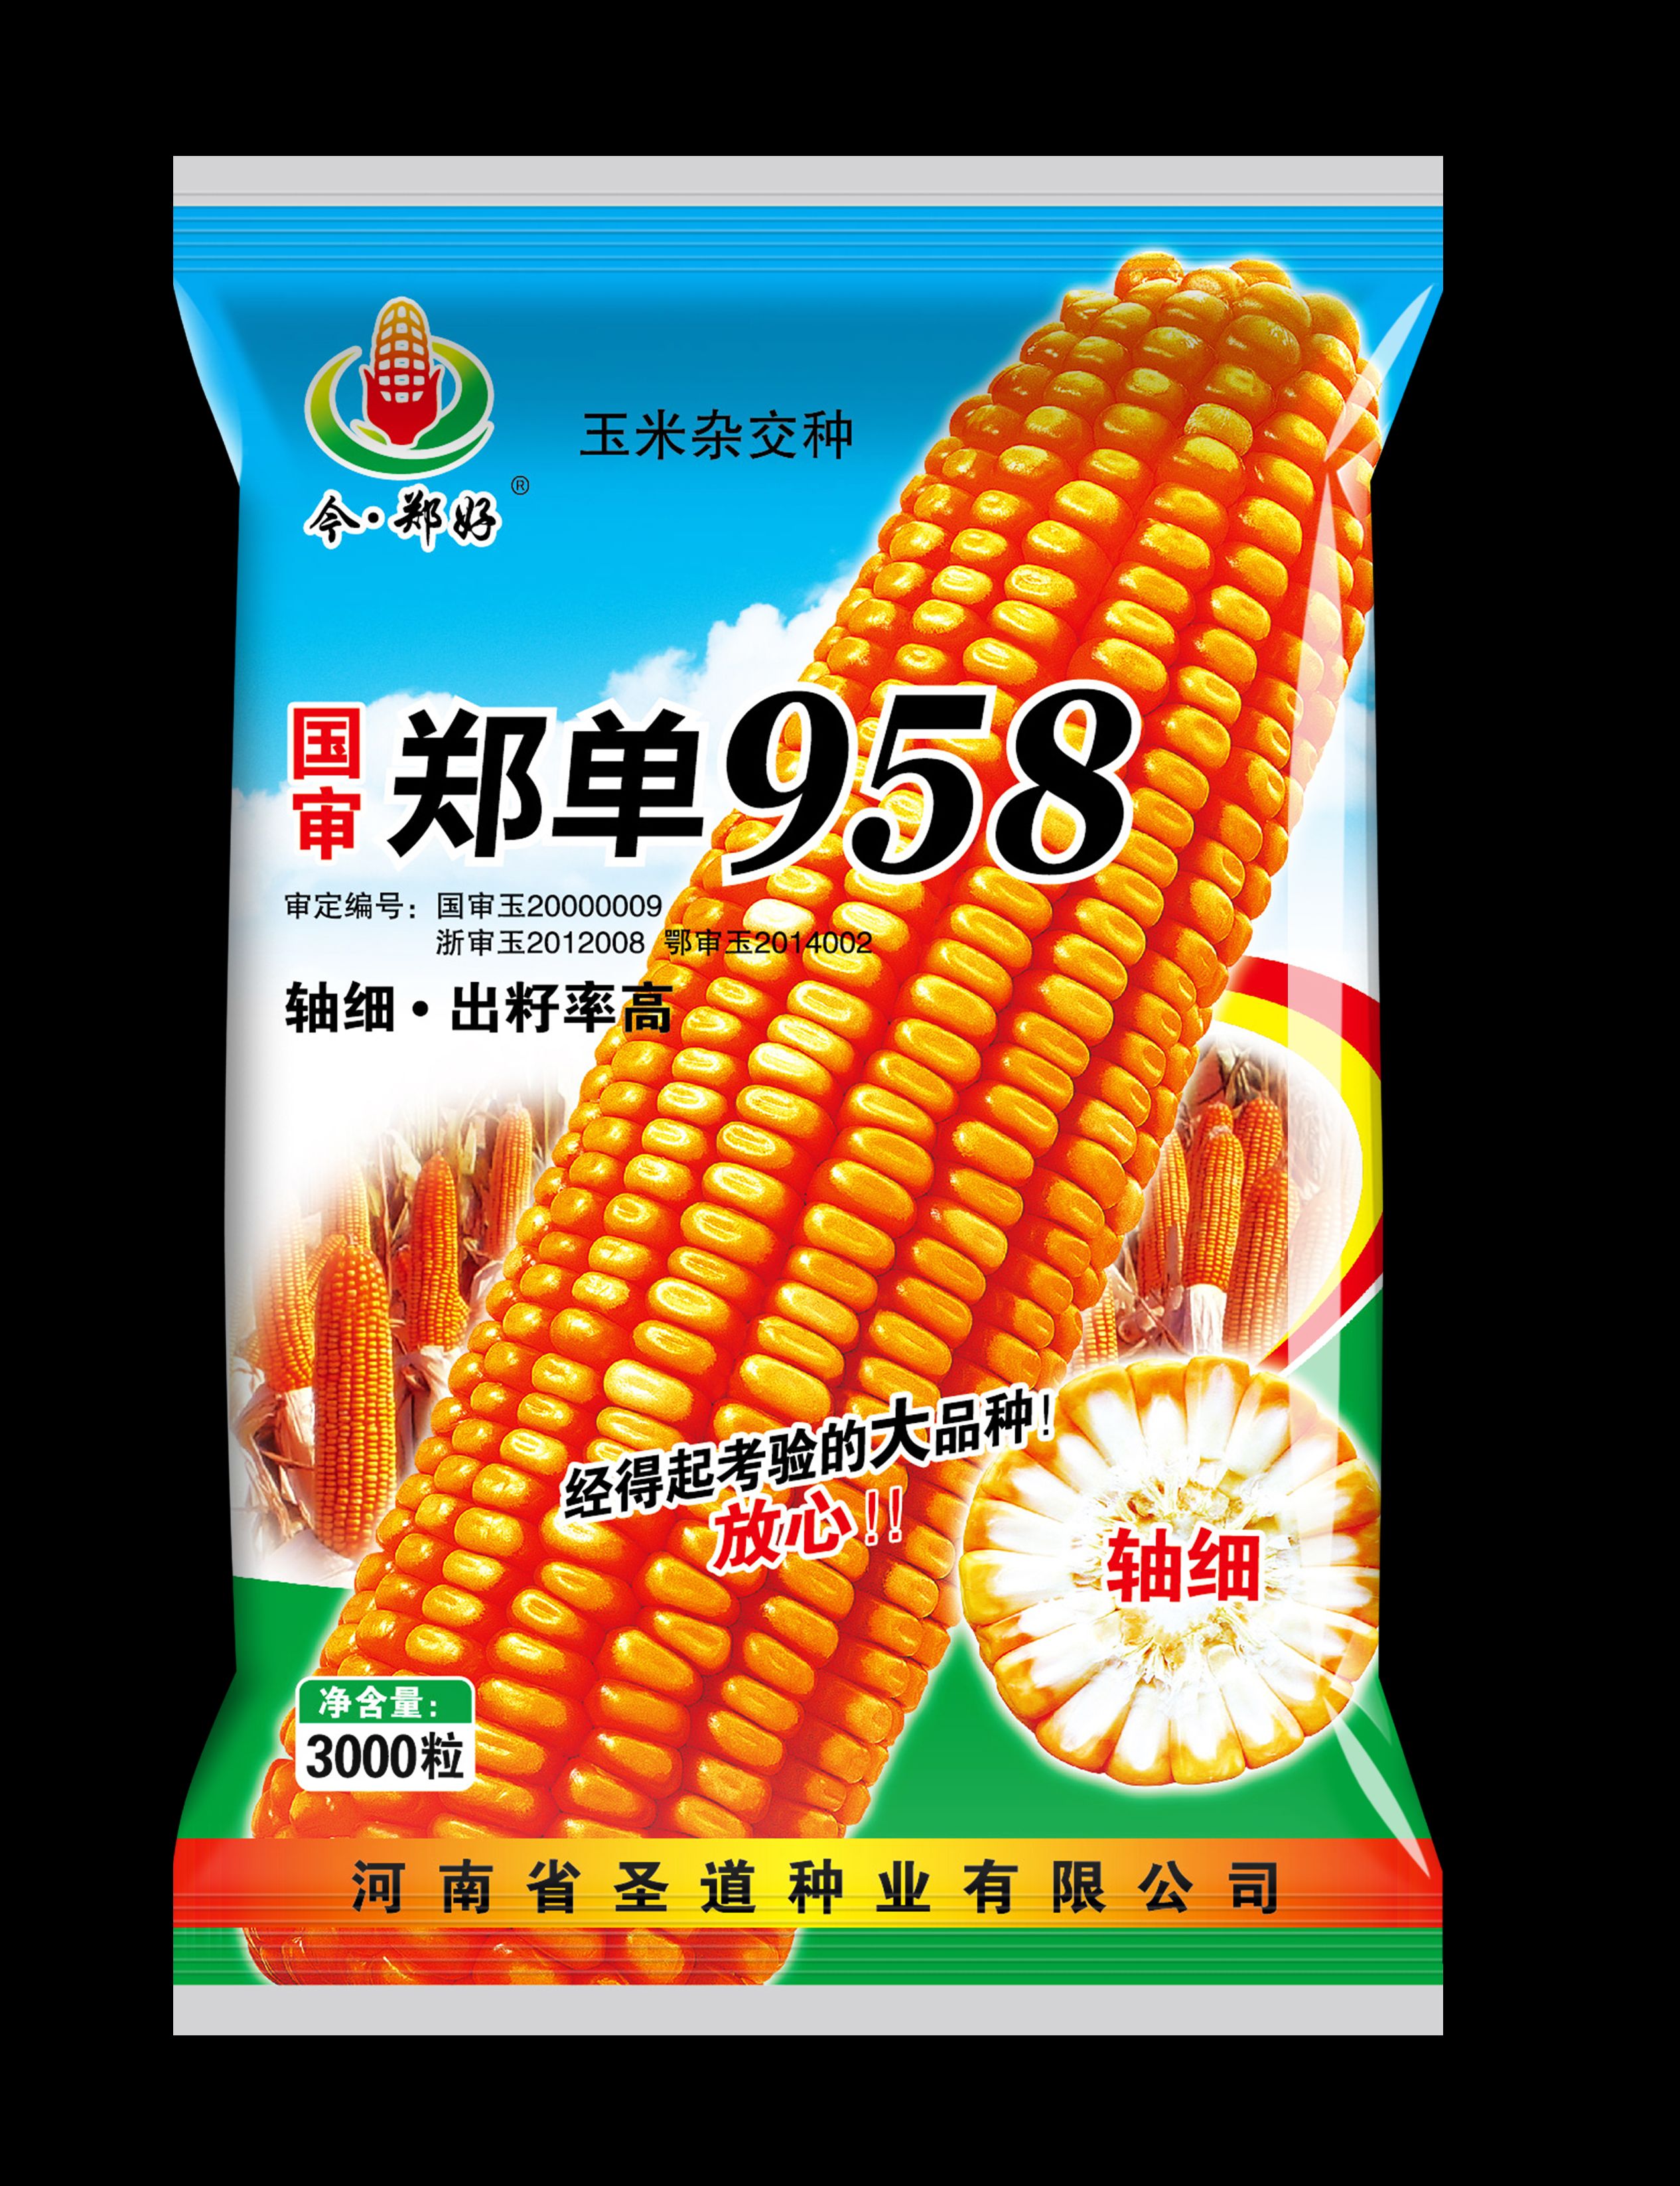 郑单958玉米种子  国审玉米品种单958玉米种子手续齐全产